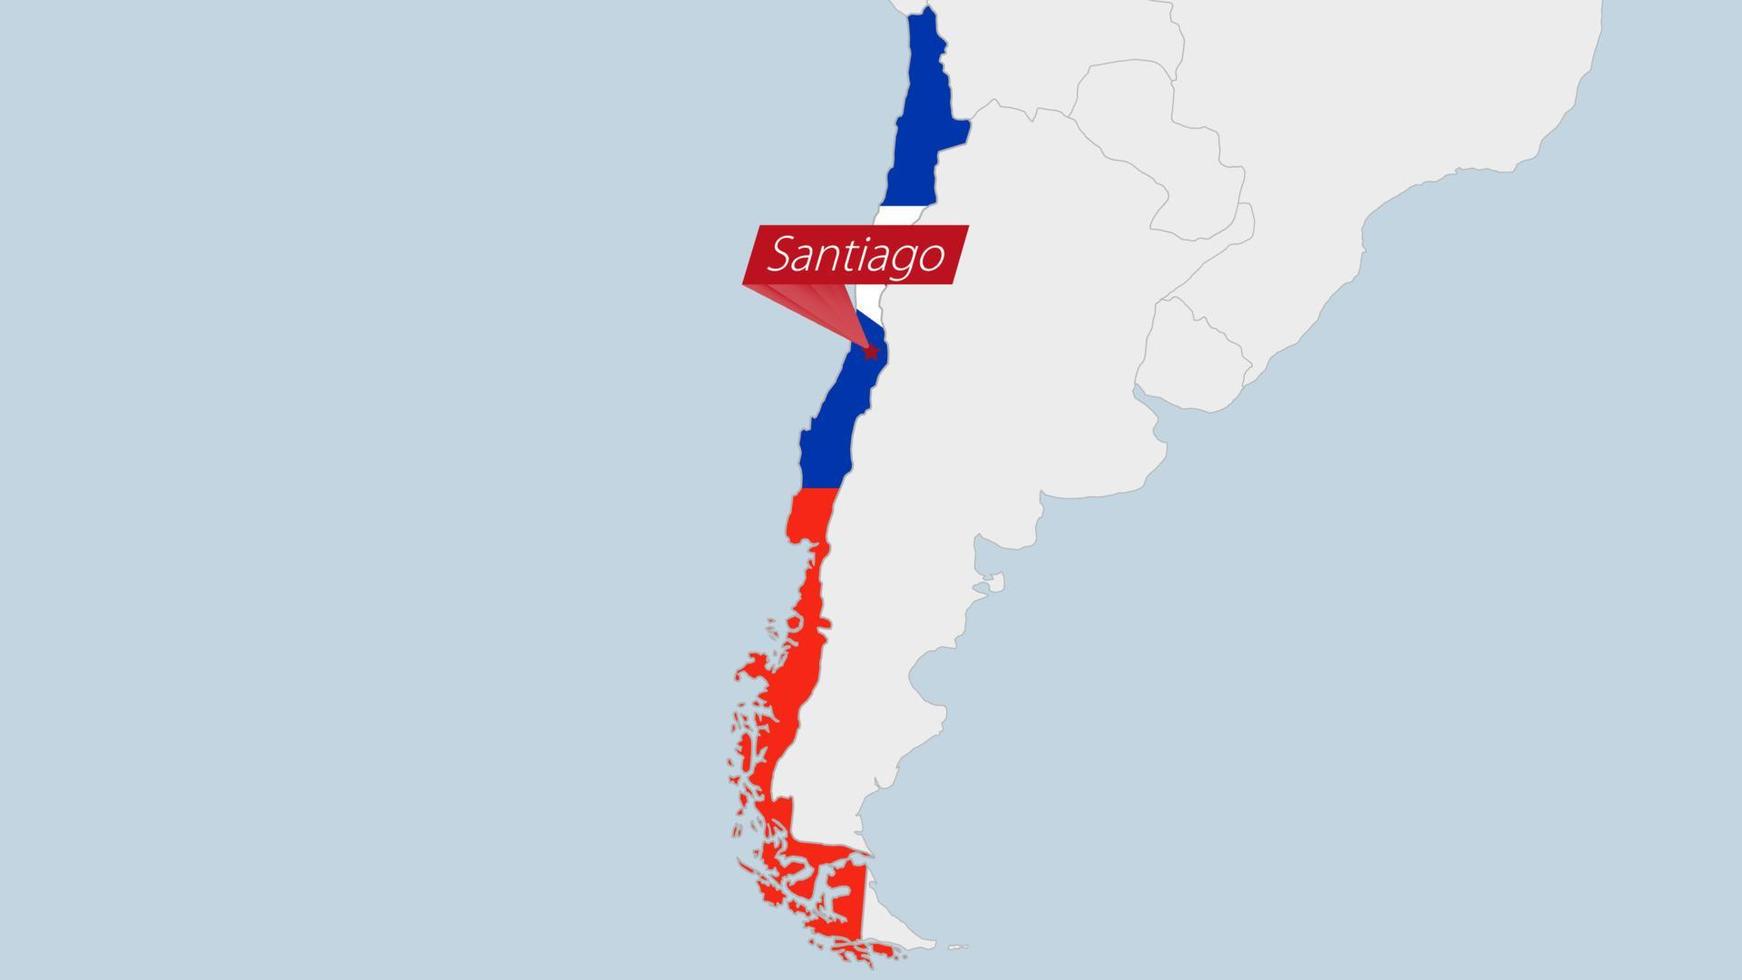 Chili carte Souligné dans Chili drapeau couleurs et épingle de pays Capitale santiago. vecteur